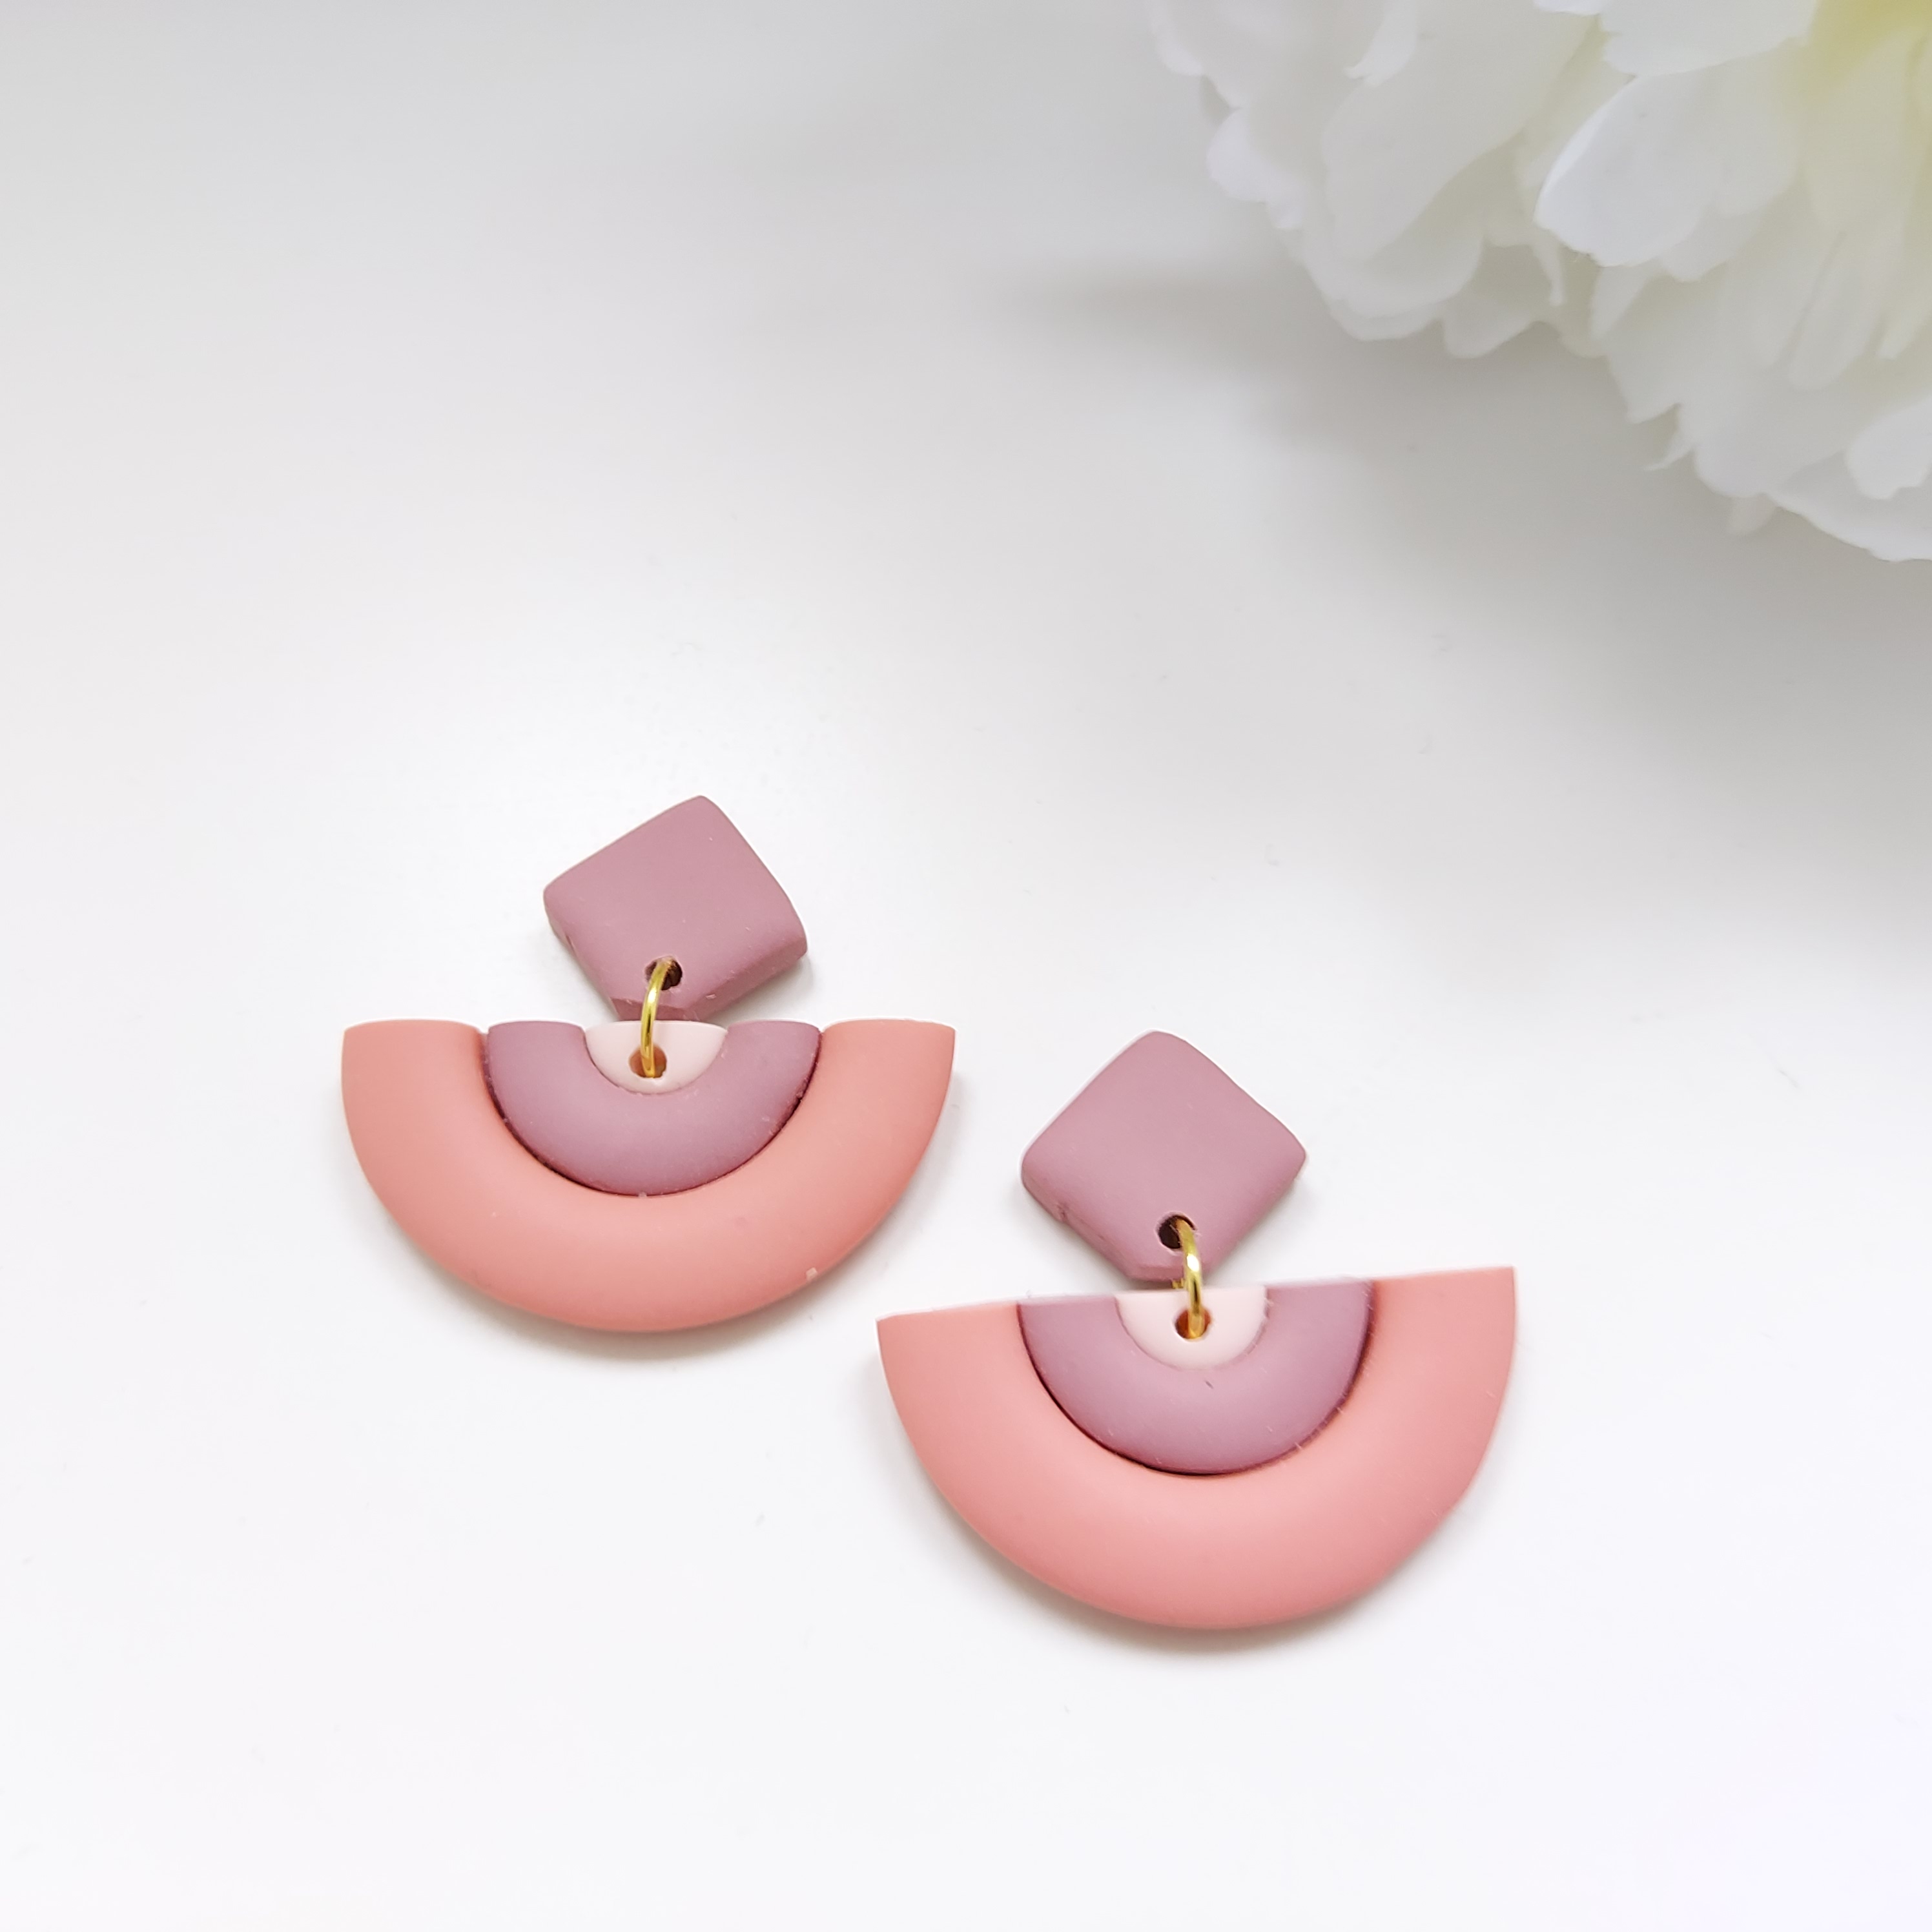 Polymer Clay Earrings - Dusty Pink Stud Earrings